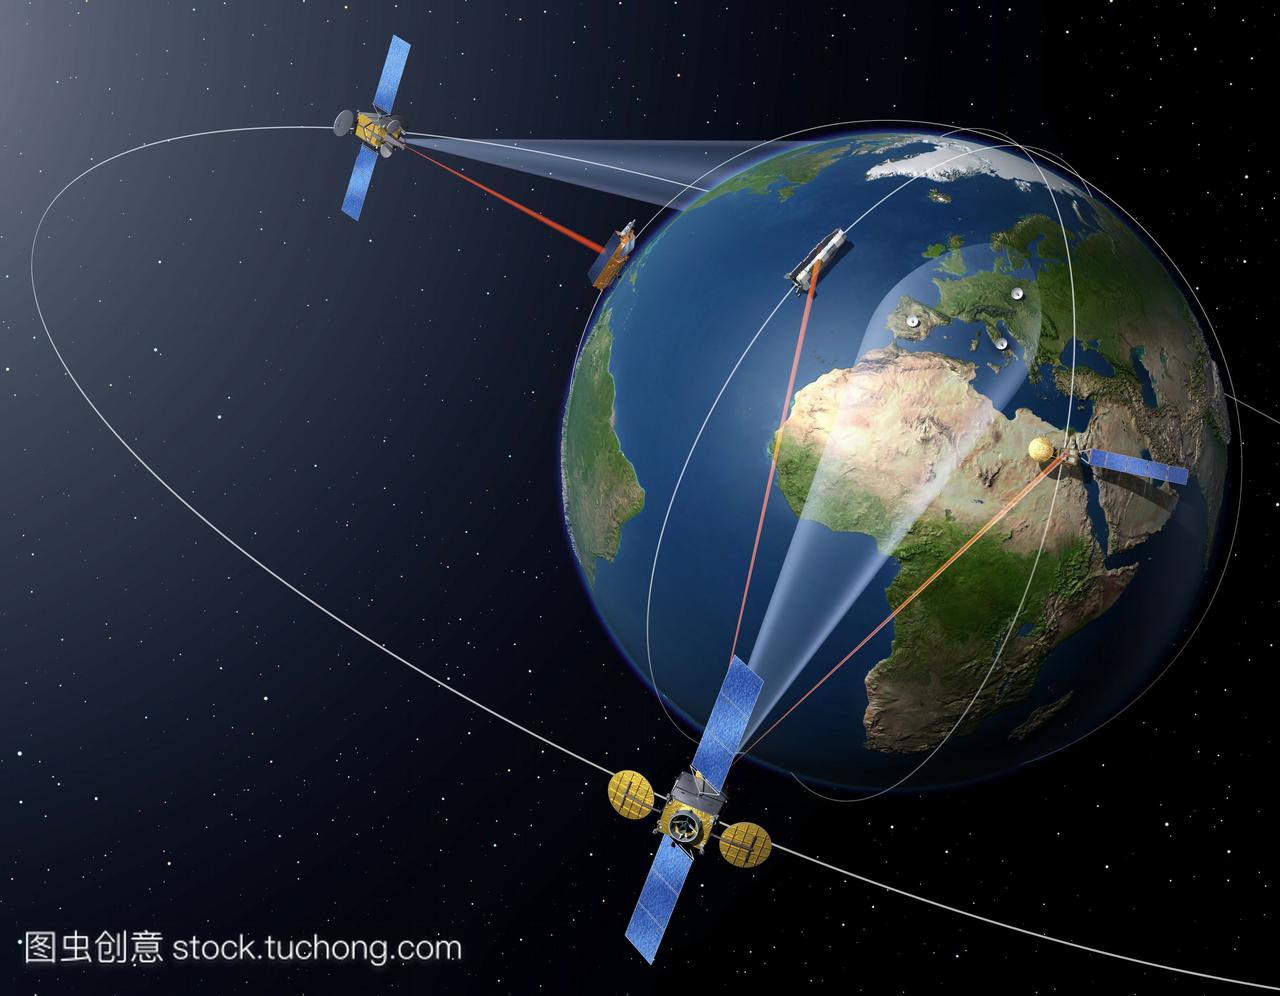 edrs系统将有两颗卫星放置在地球静止轨道上,它将在航天器,非地球静止